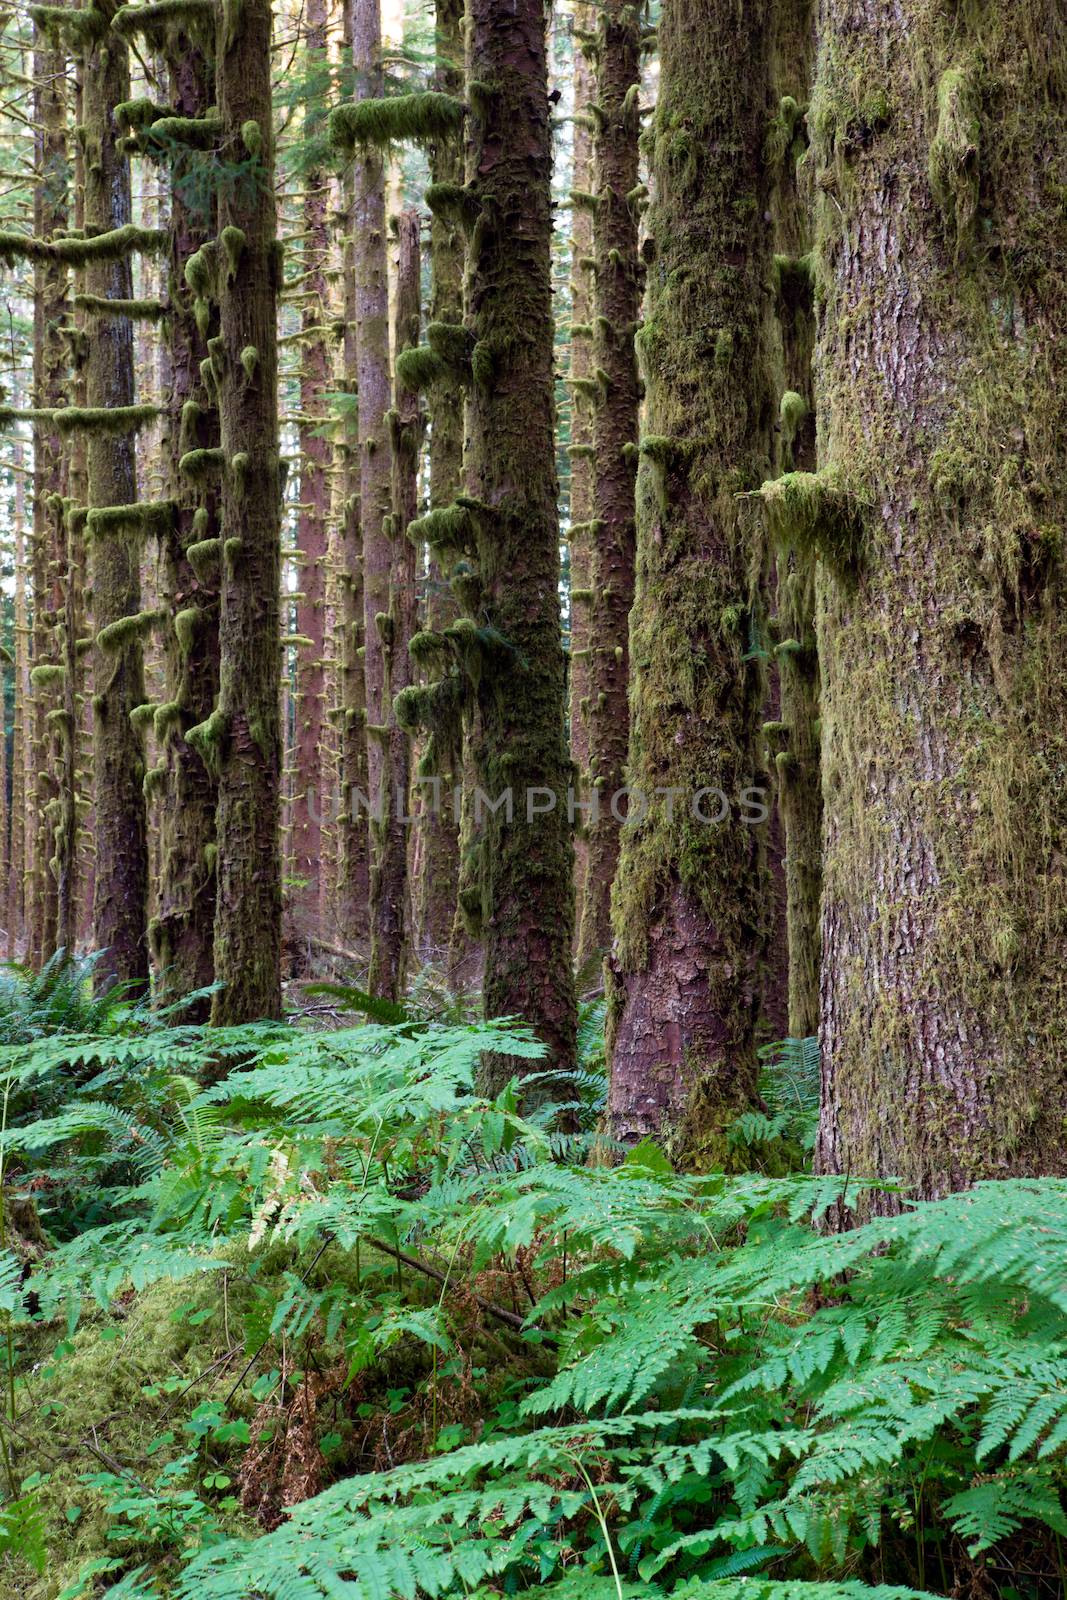 Hoh Rainforest Spruce Hemlock Cedar Trees Fern Groundcover by ChrisBoswell